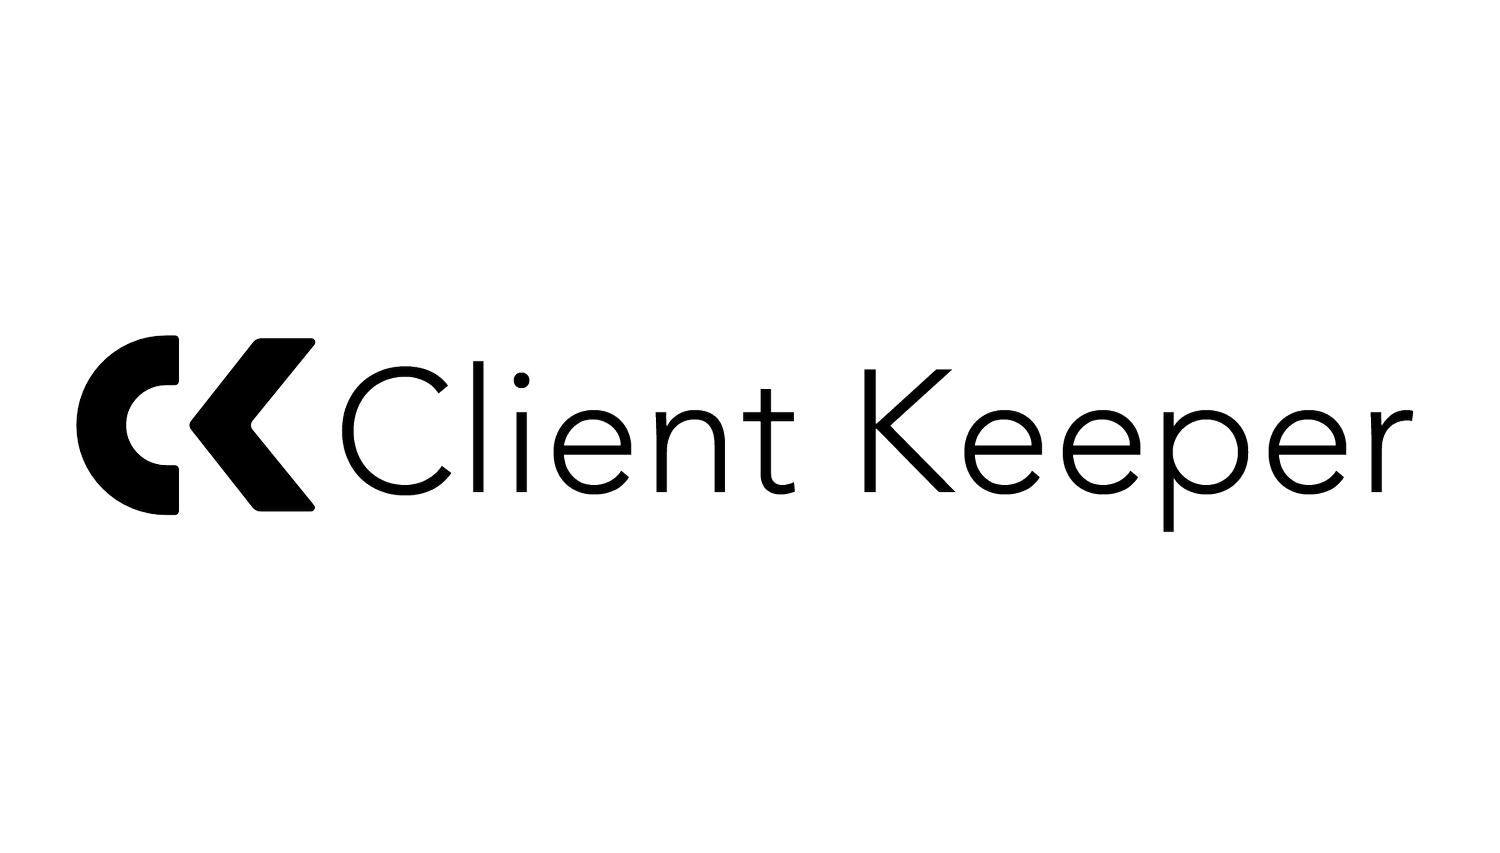 Client Keeper